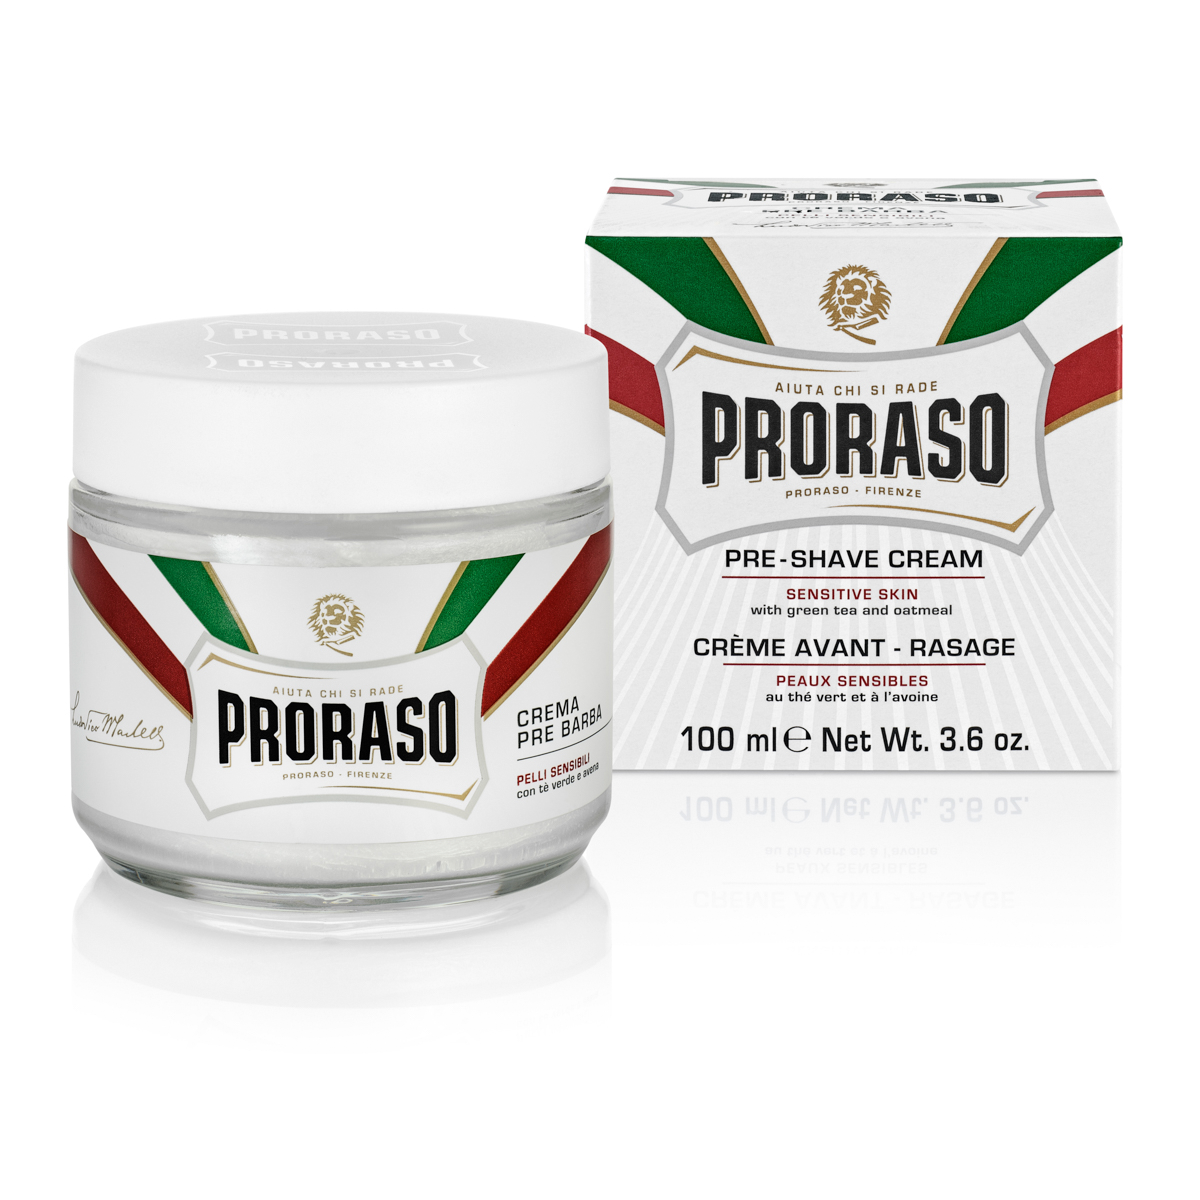 Proraso Preshave Cream - Sensitive, Grøn Te & Havre, 100 ml